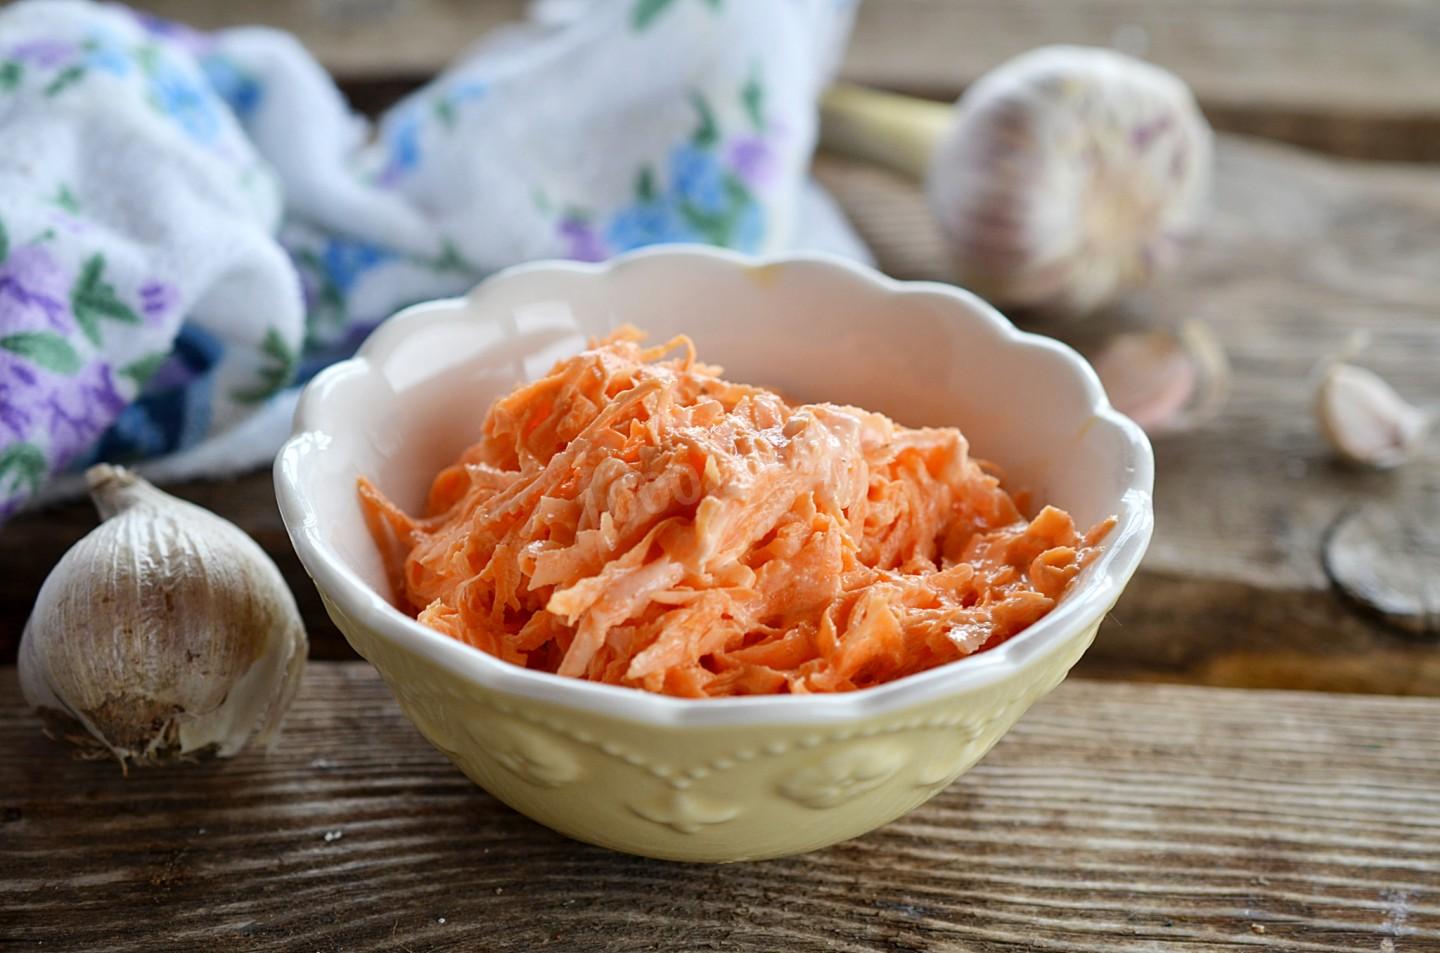 Jaké jsou výhody mrkve a česneku?